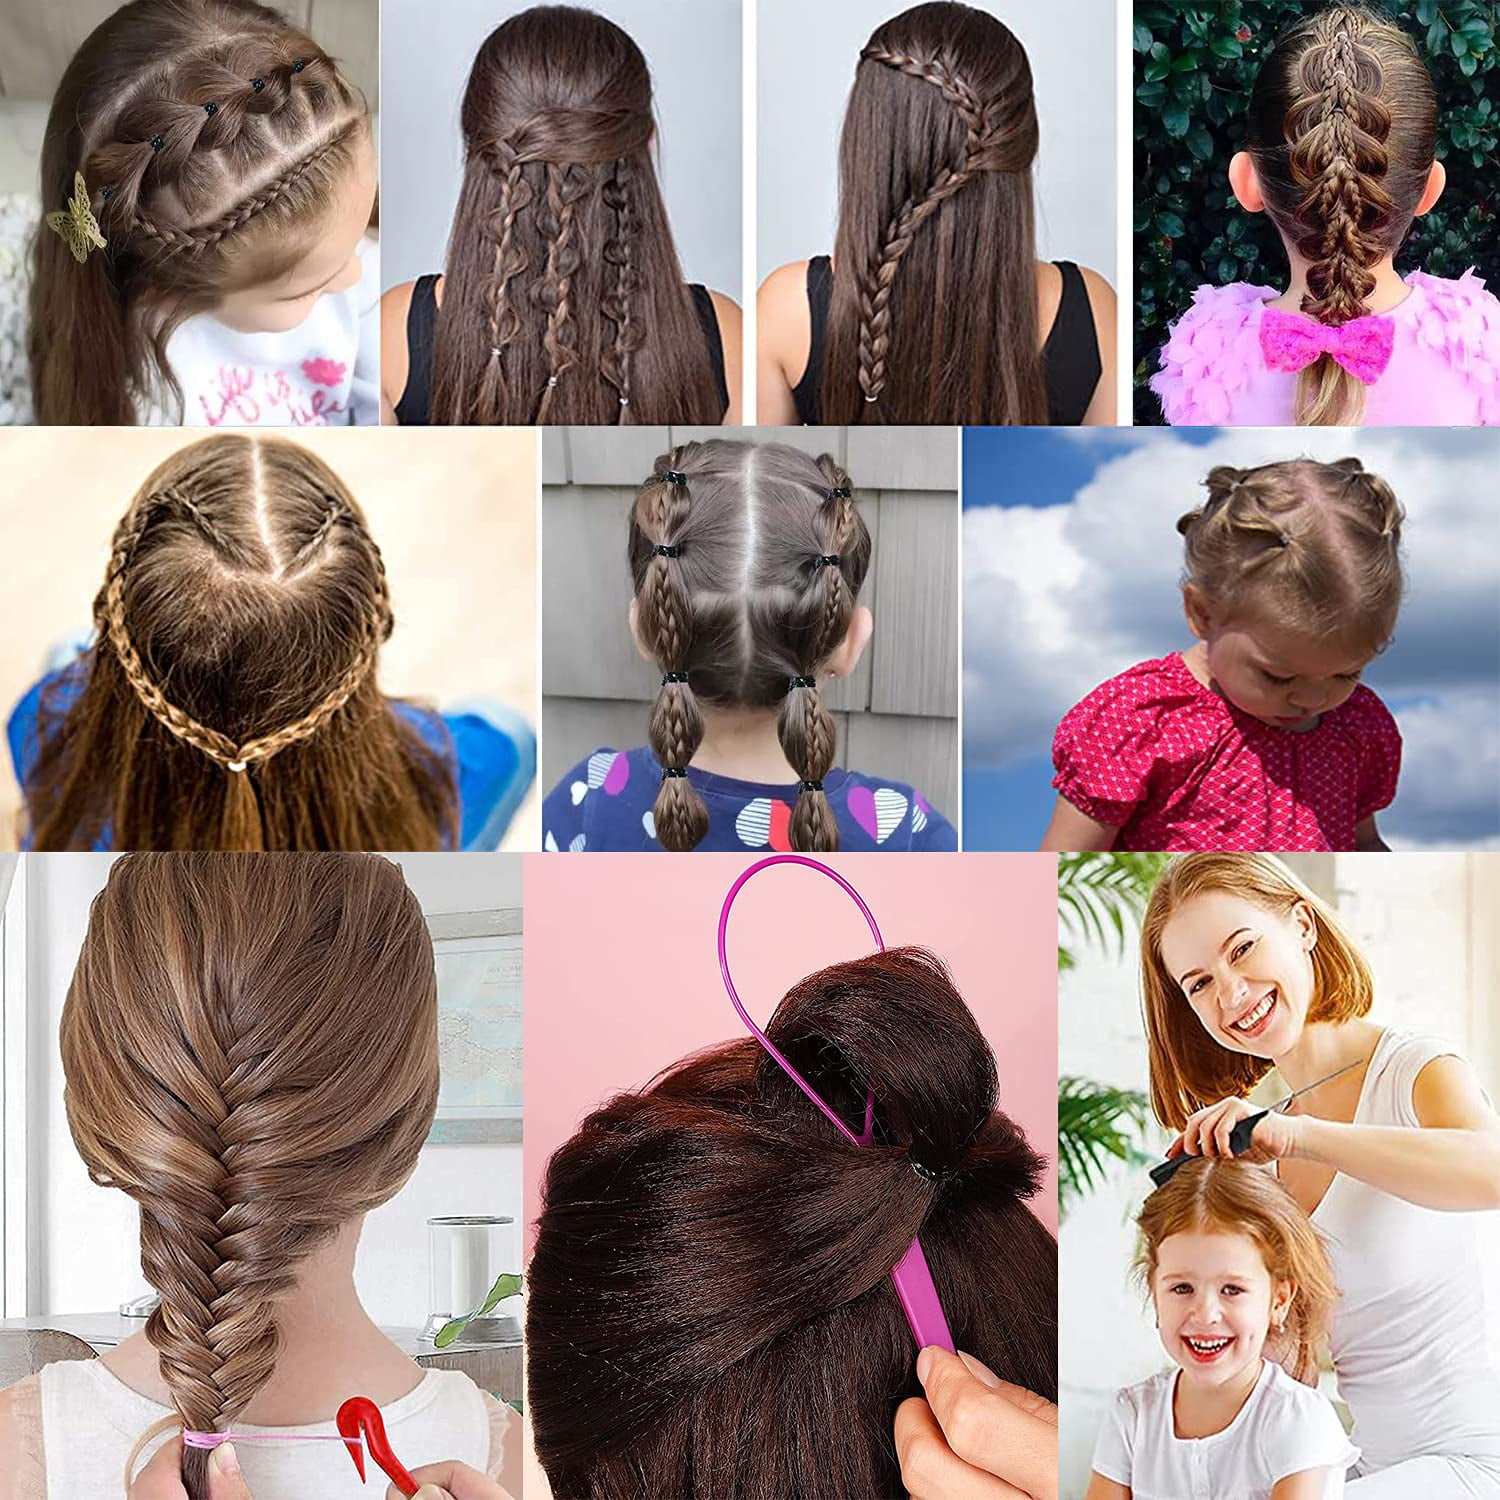 TsMADDTs 1000pcs Colorful Hair Elastics with Hair Loop Styling Tool Set,1000pcs Baby Hair Bands Hair Ties Toddler Girl 2pcs Hair Loop 1Pcs Rat Tail